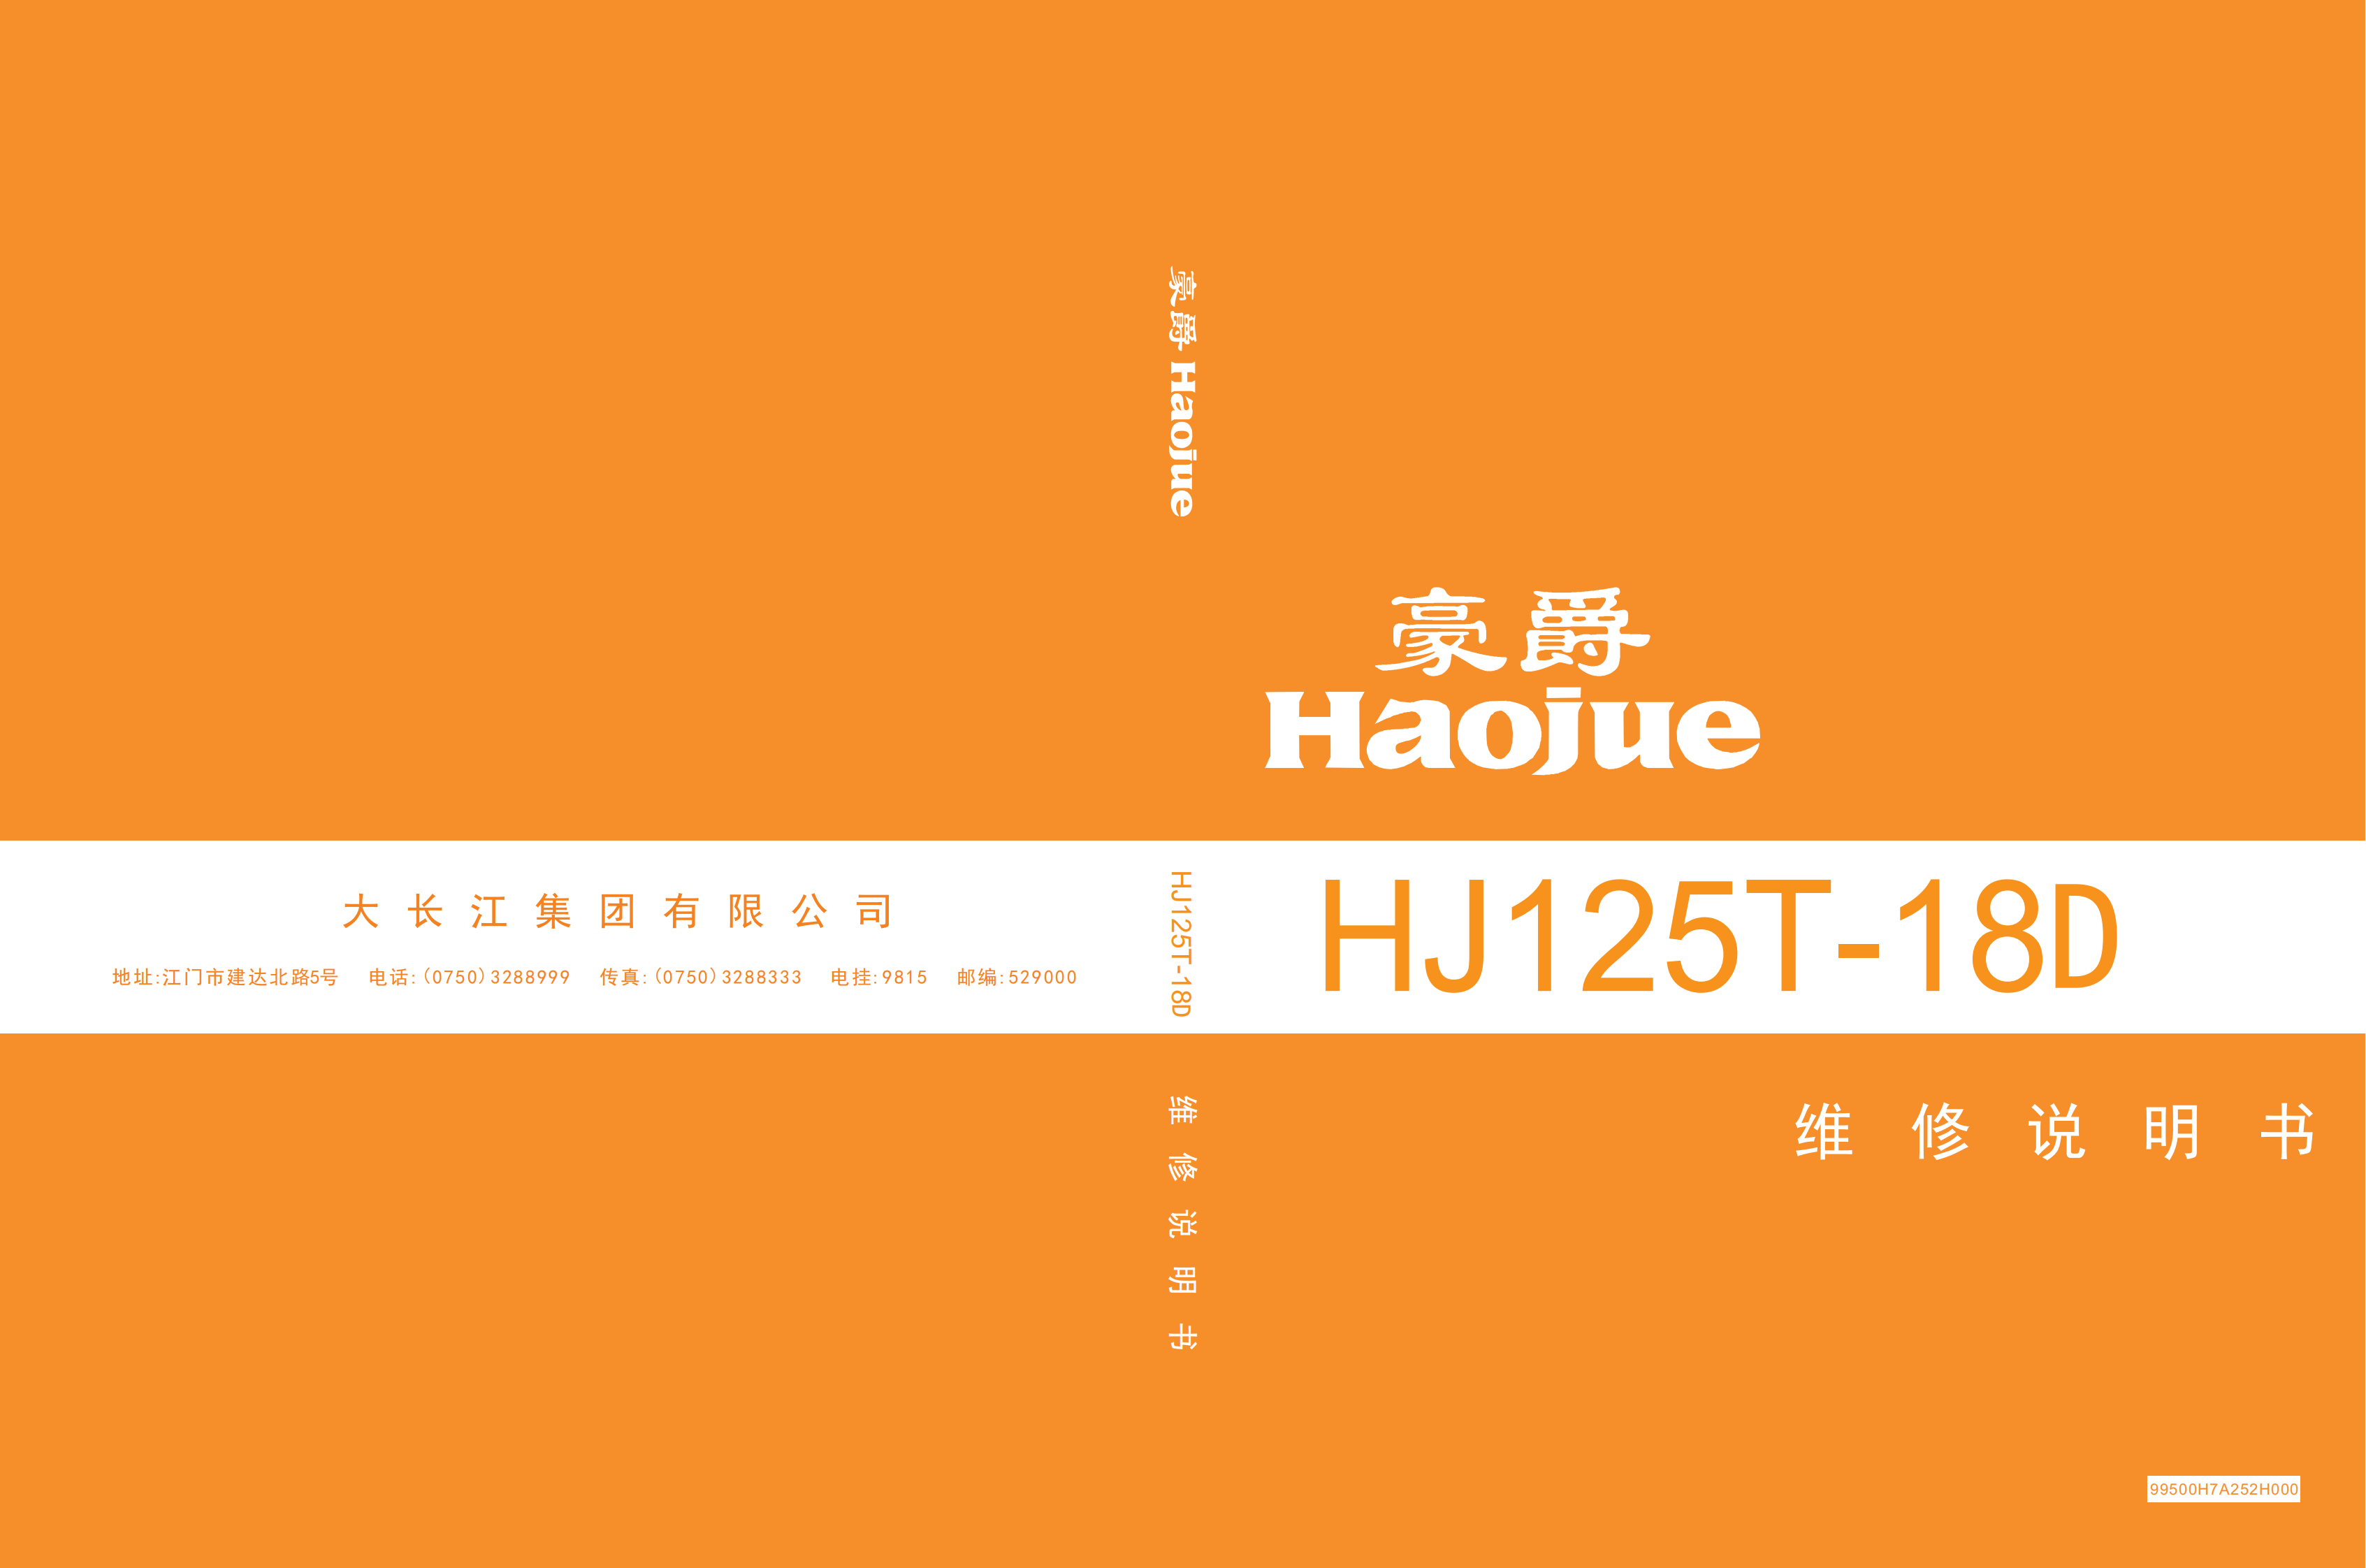 原版中文2016年豪爵灵迪维修手册HJ125T-18D维修手册插图